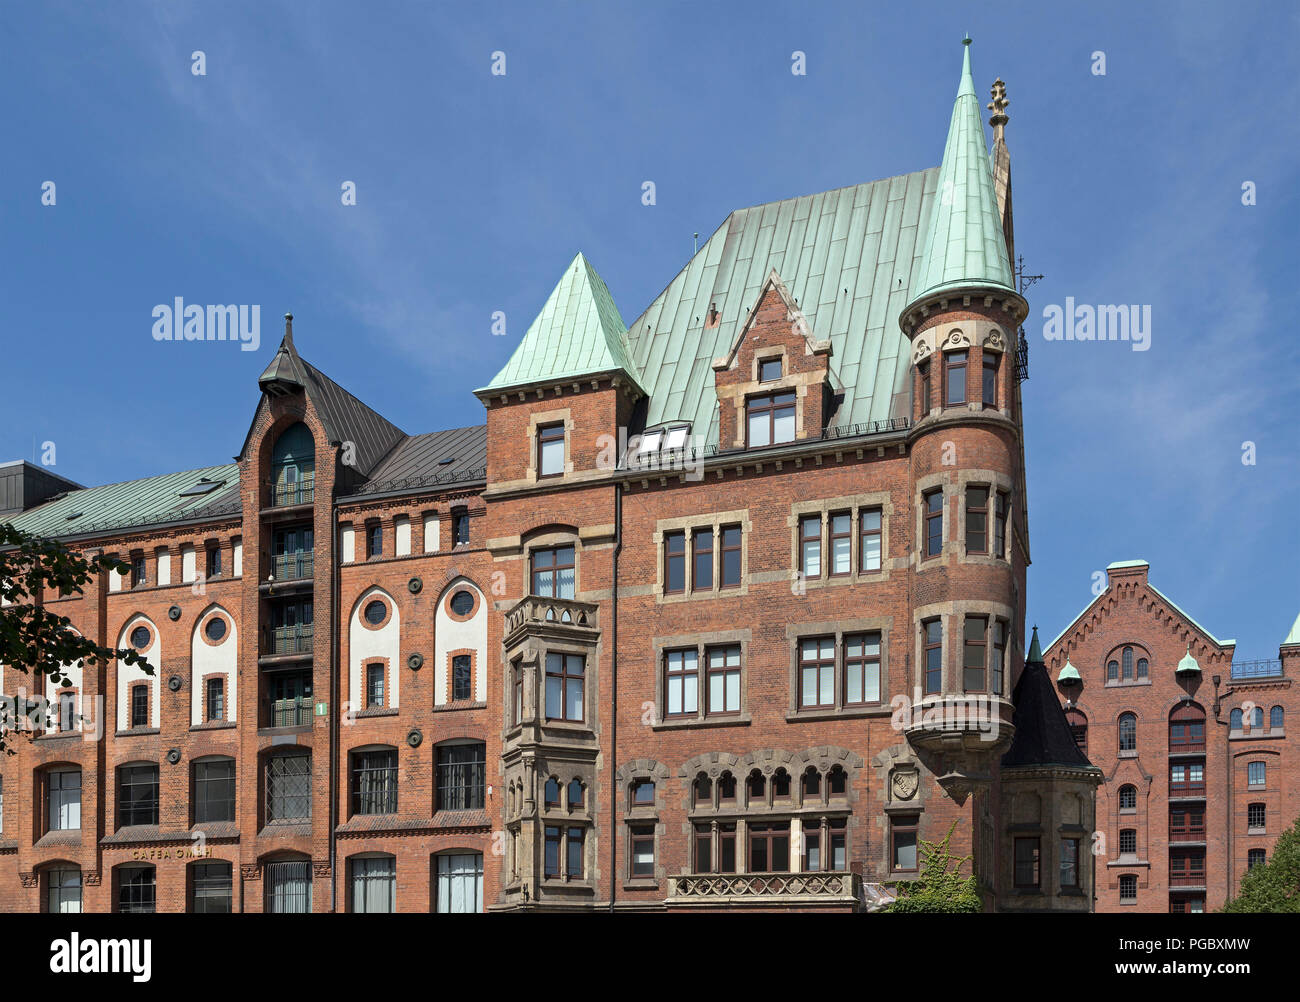 Les bâtiments anciens, Speicherstadt (quartier des entrepôts), Hambourg, Allemagne Banque D'Images